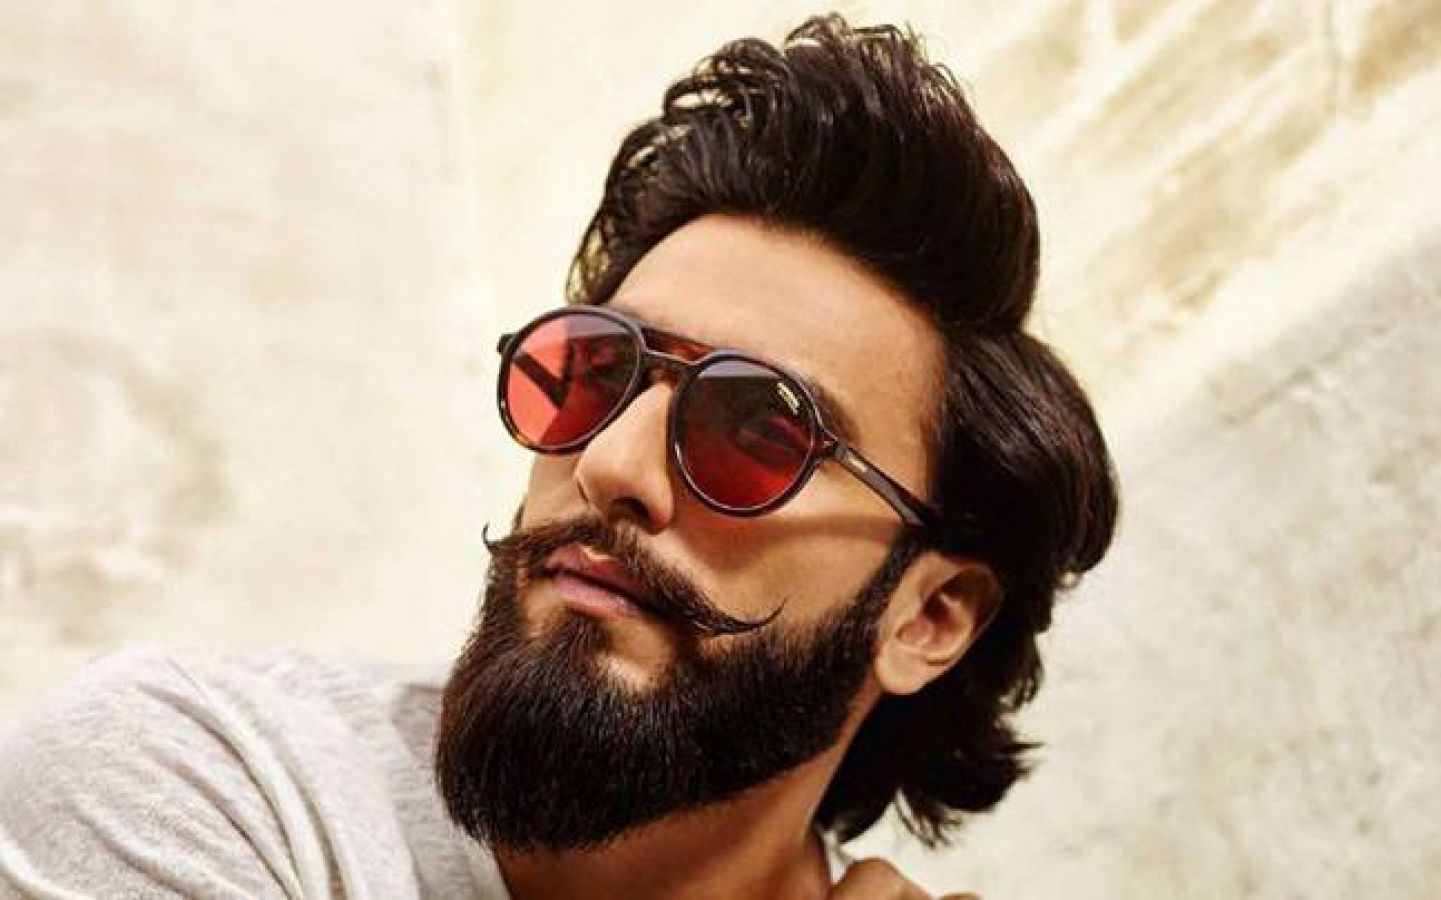 Beard Style - Beard Style Ranveer Singh #RanveerSingh